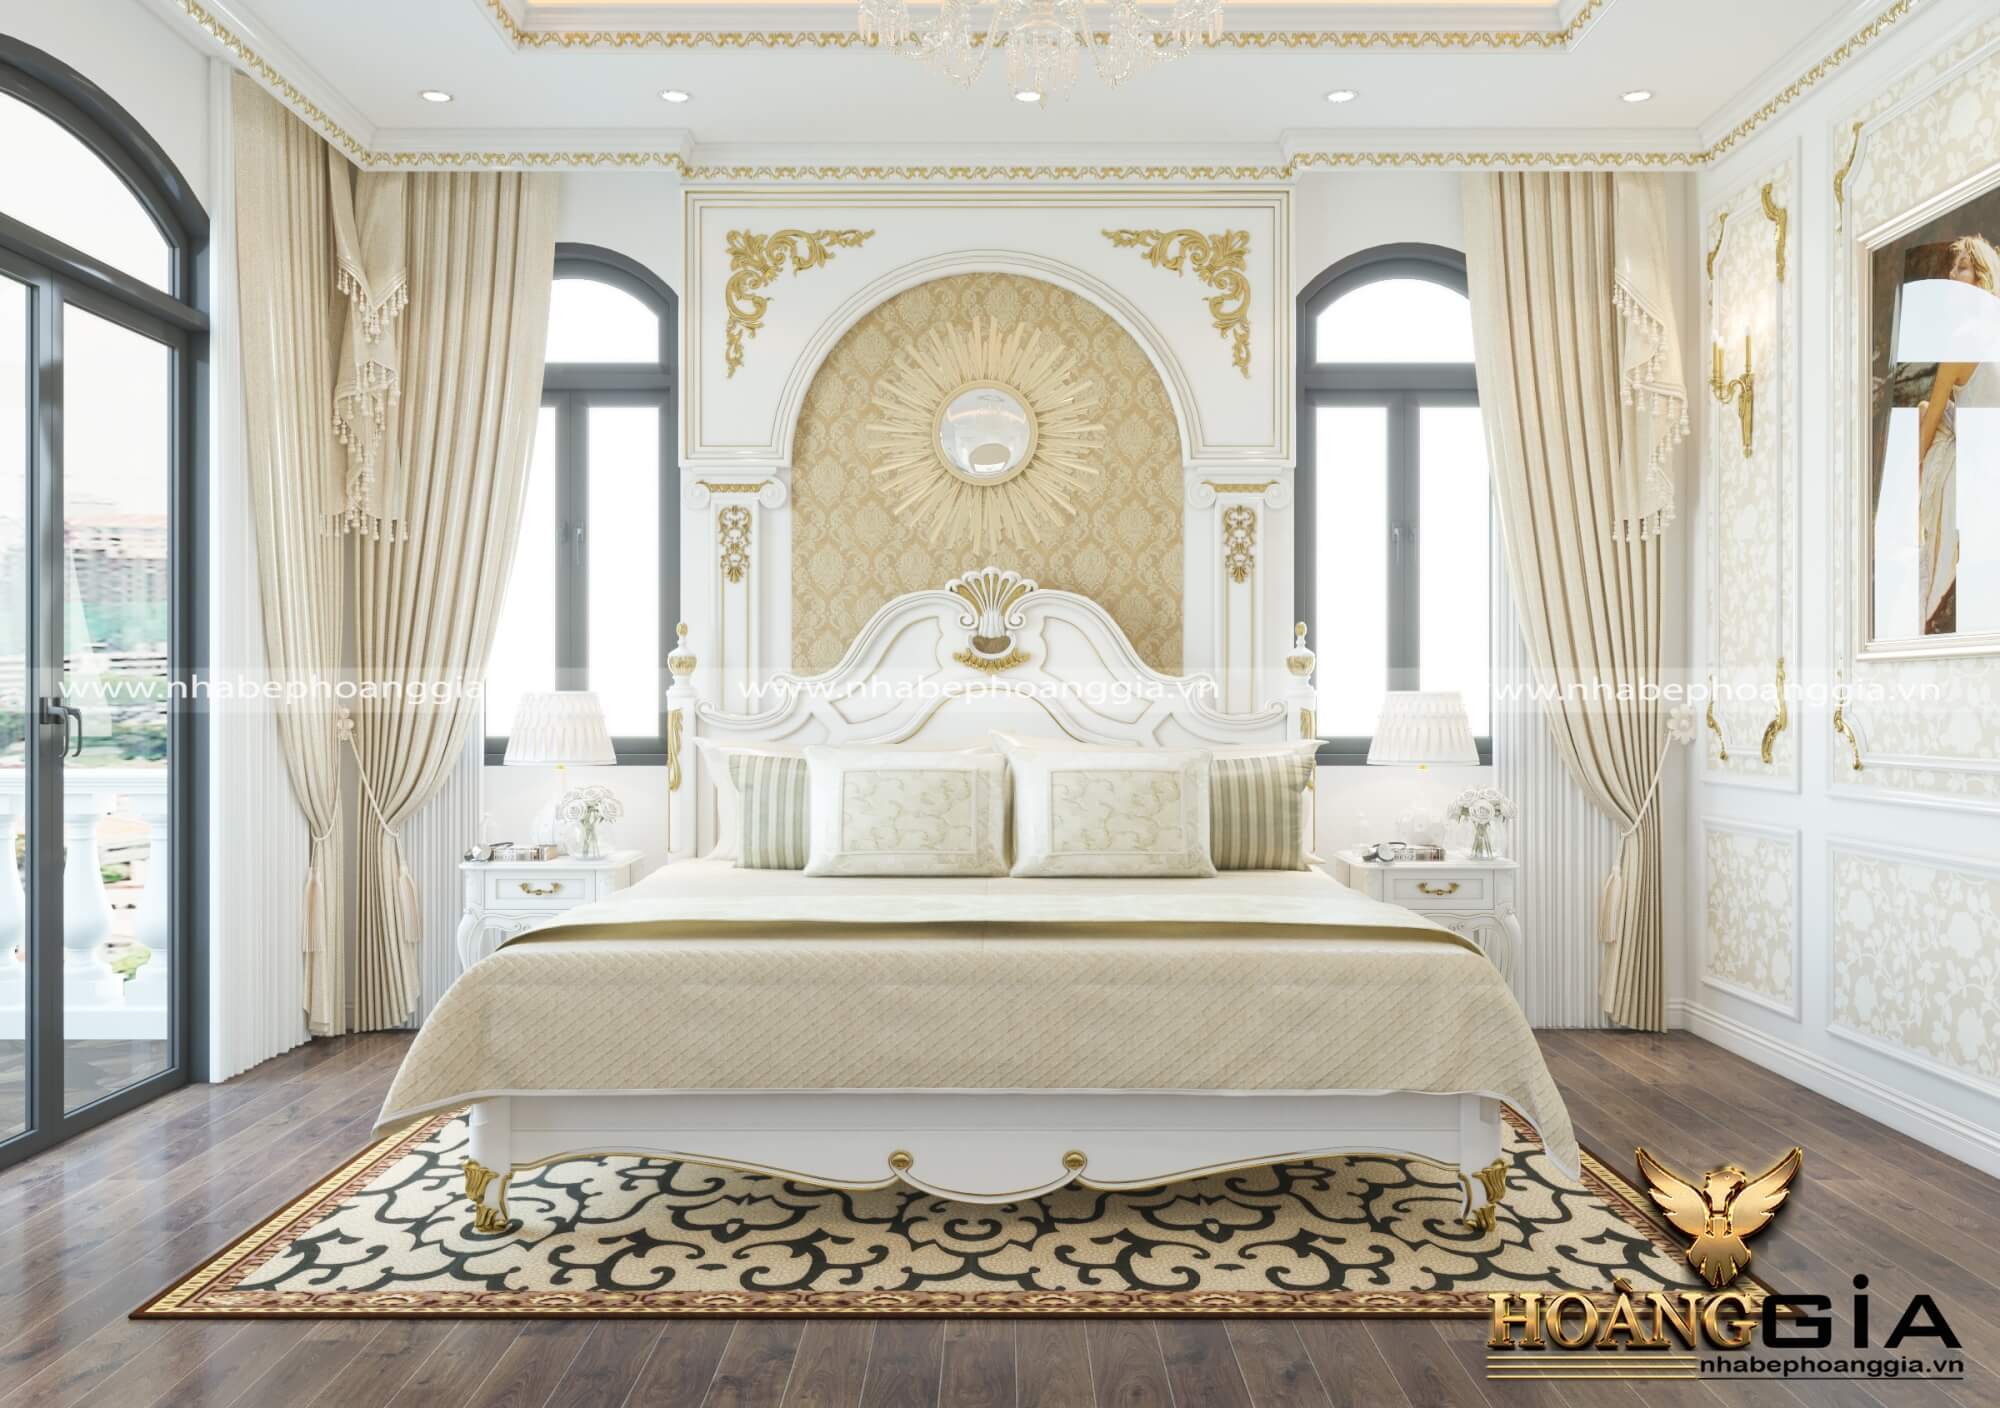 Mẫu phòng ngủ sơn trắng dát vàng hoàng gia đẳng cấp